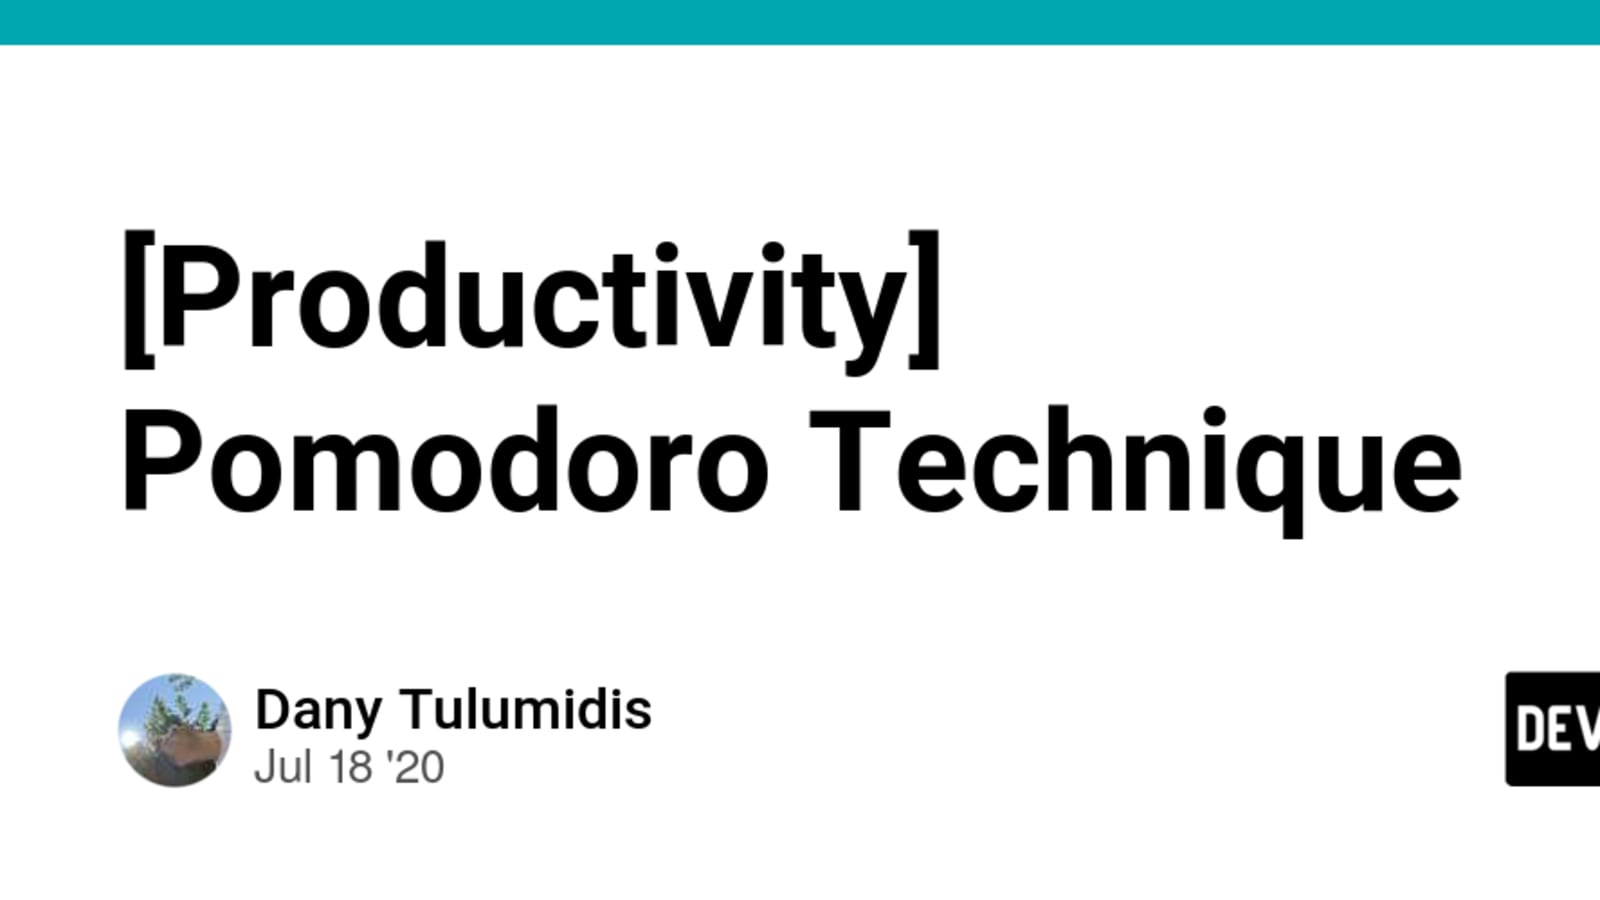 Pomodoro Technique - Wikipedia